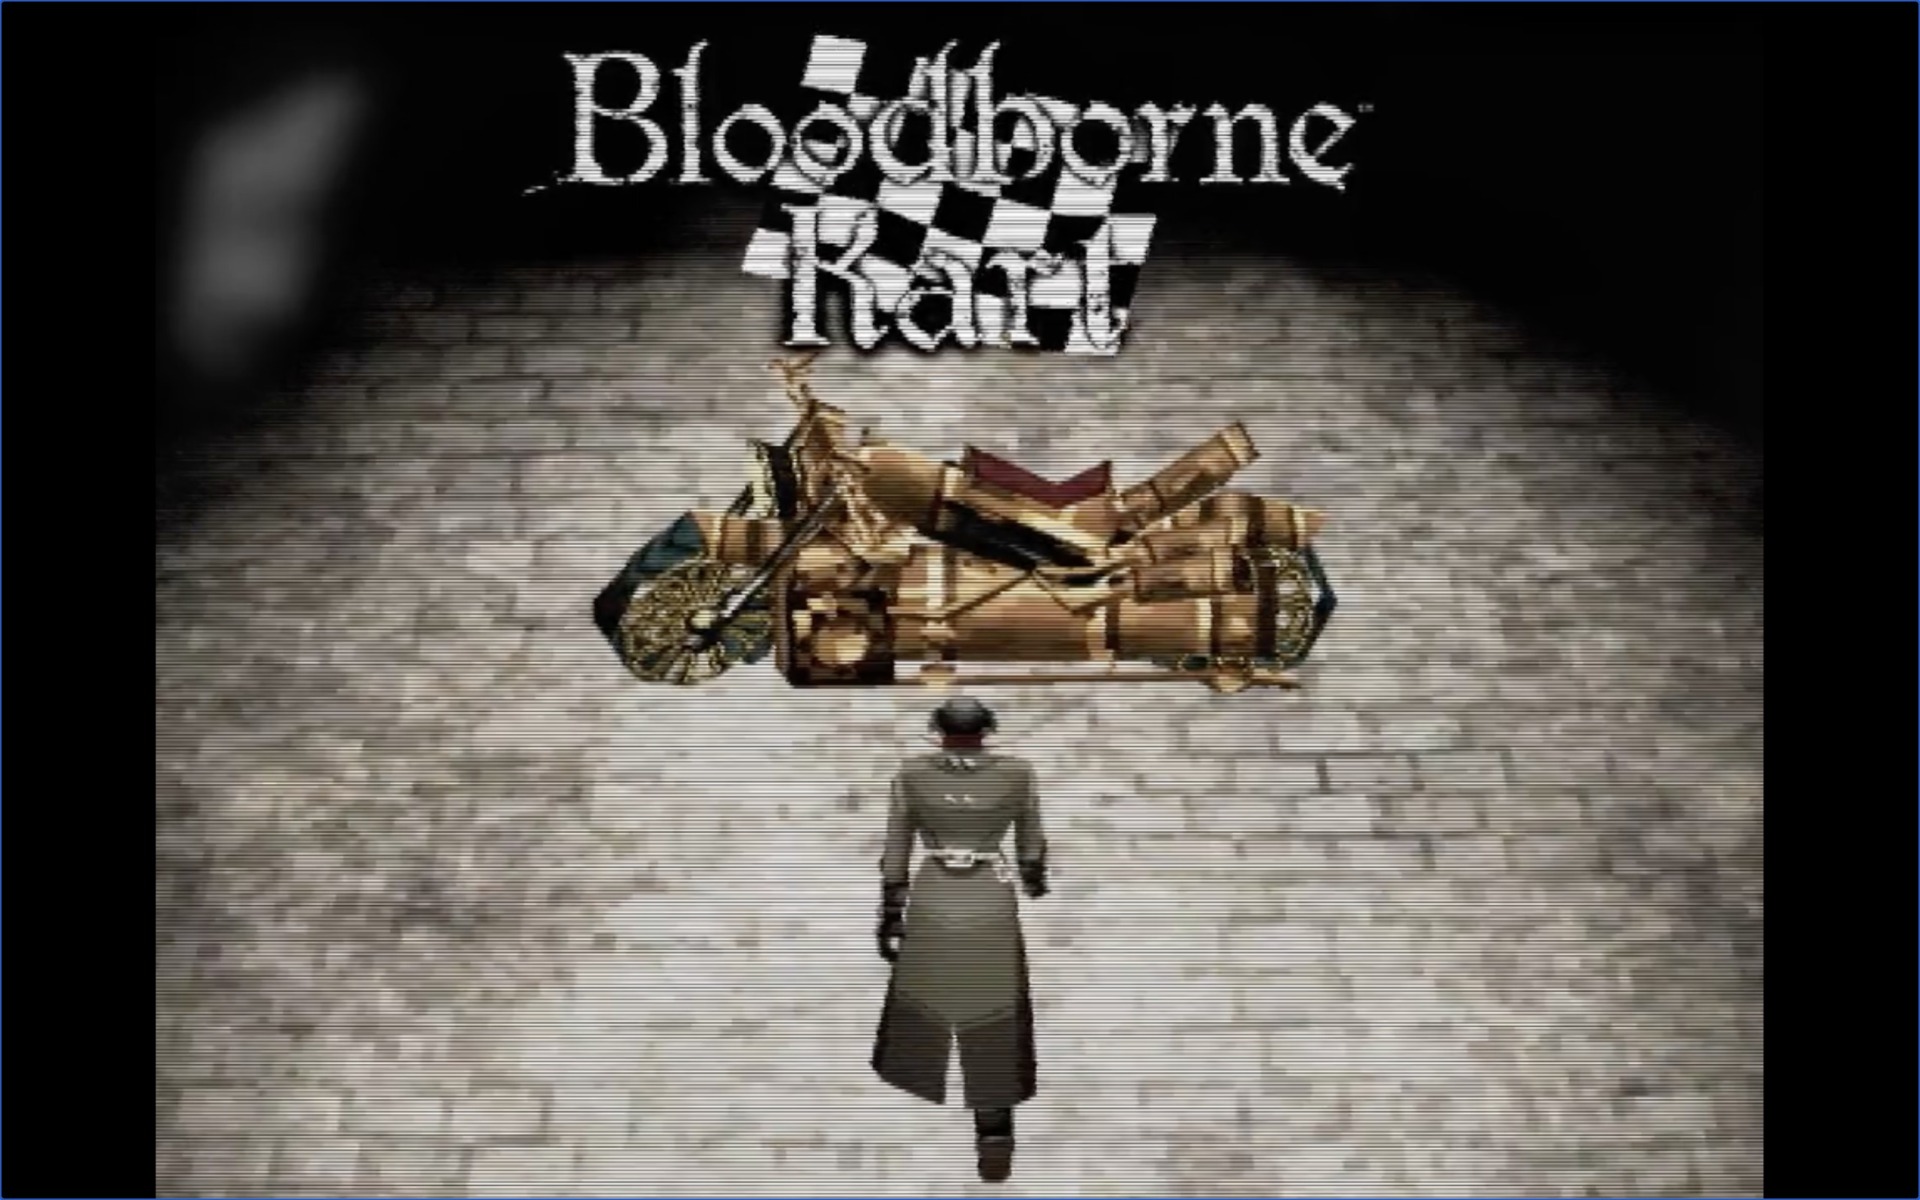 Bloodborne PSX Developer Making Bloodborne Kart